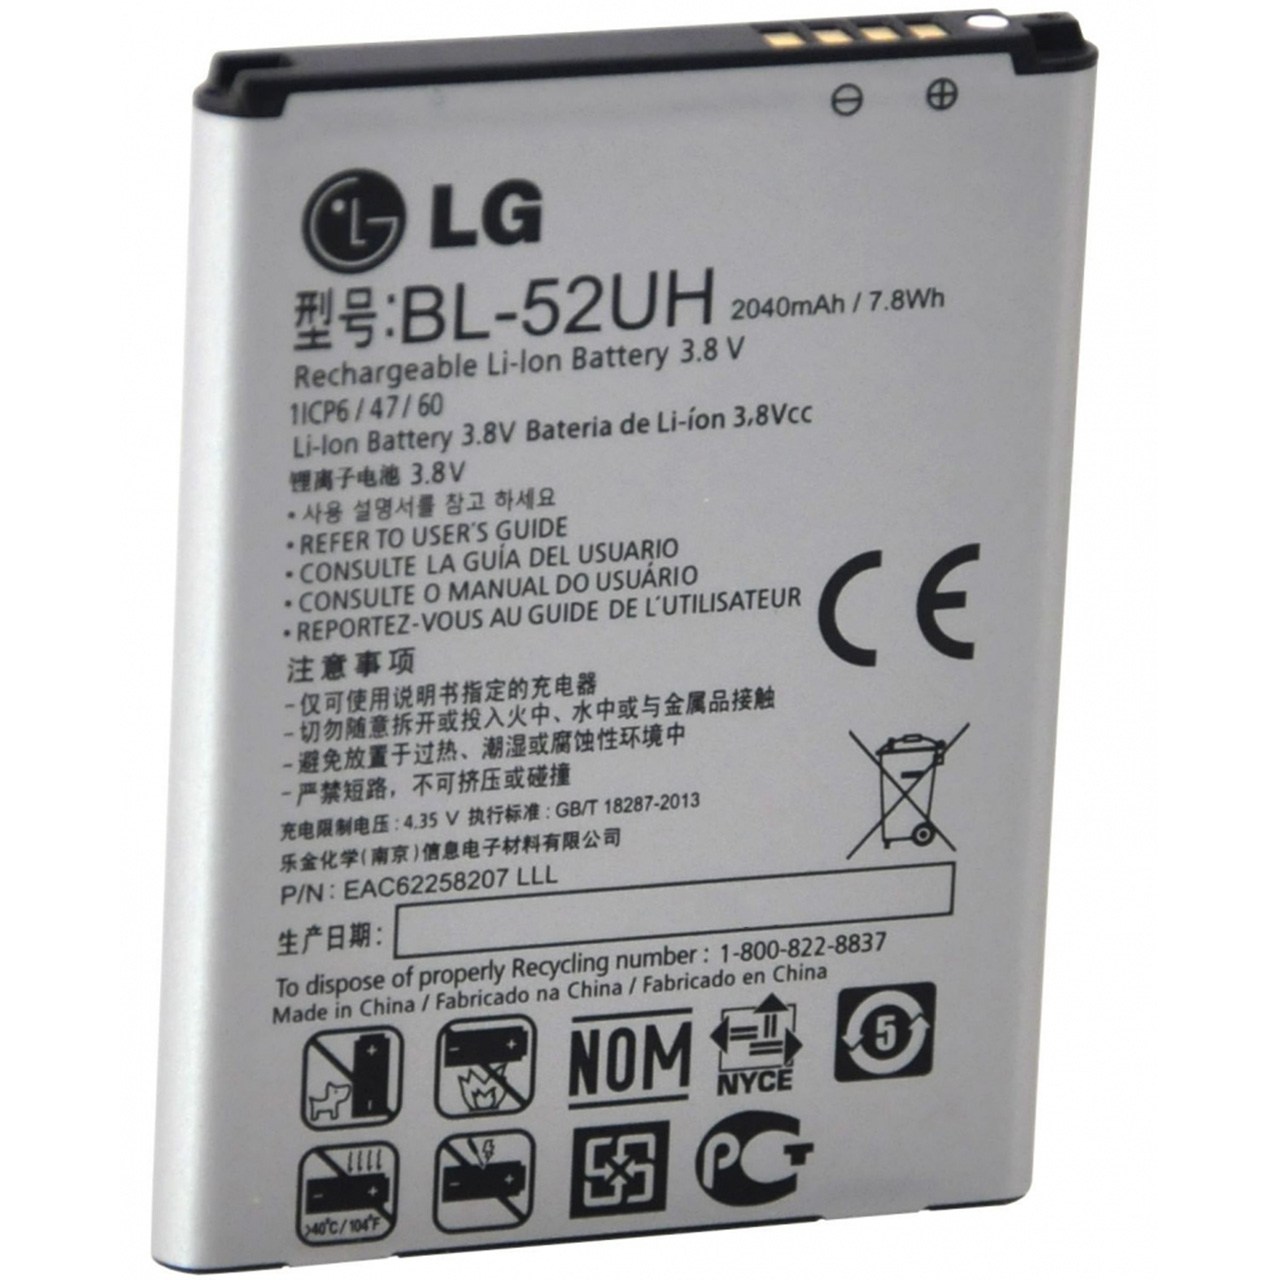 باتری موبایل  مدل BL-52UH با ظرفیت 2040mAh مناسب برای گوشی موبایل ال جی L70